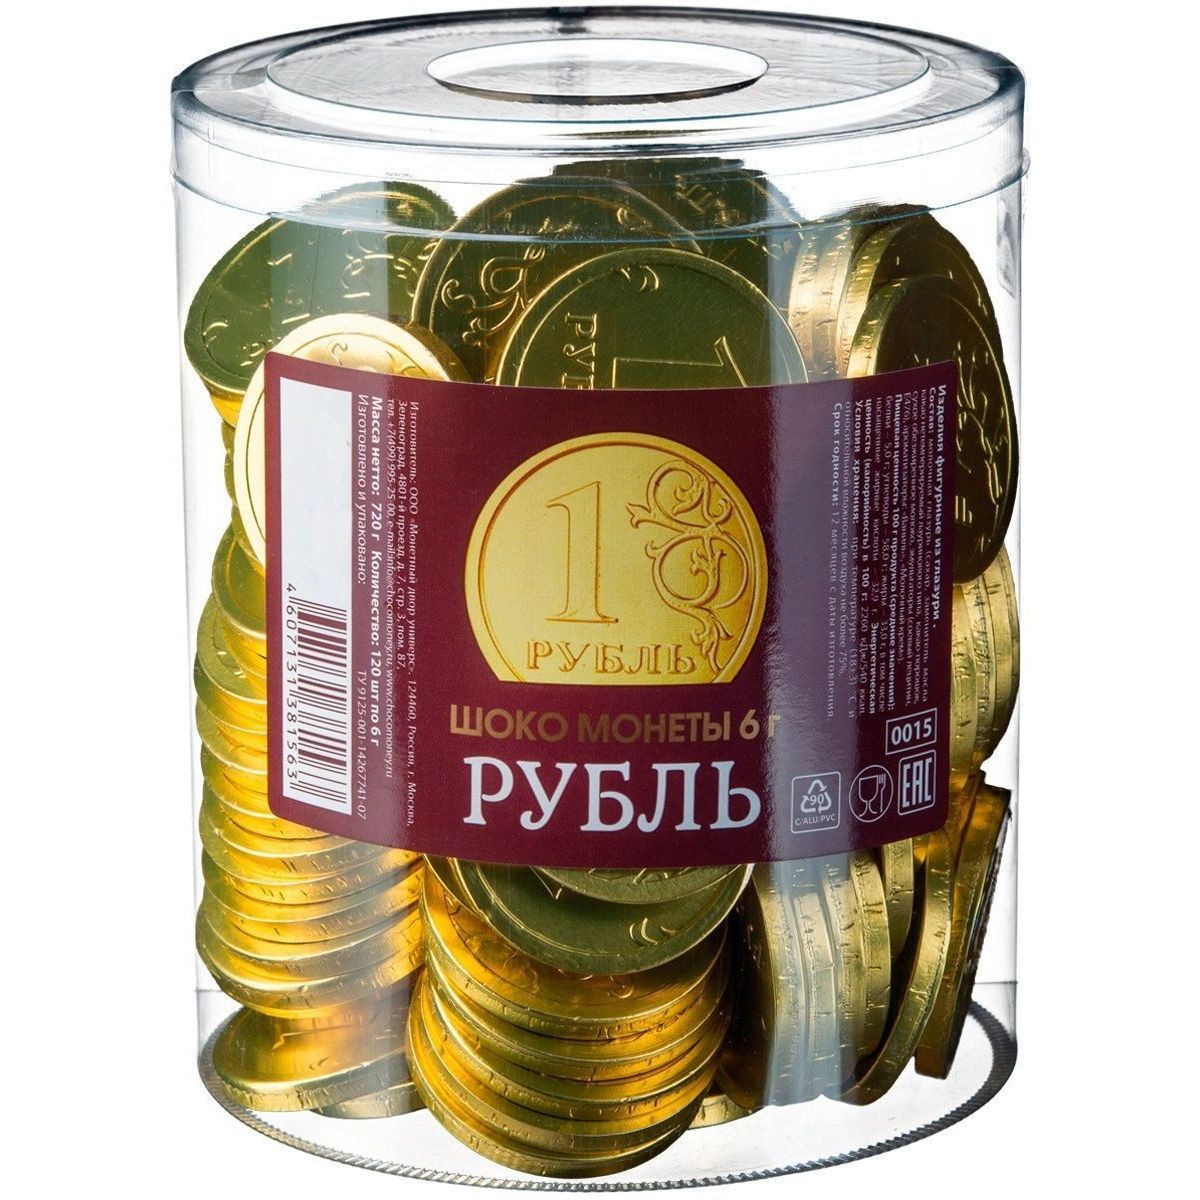 Шоколадка монета. Шоколадные монеты монетный двор. Монеты шоколадные рубль , 6 г/120/4, монетный двор, 720 гр., ПЭТ. Шоколадная монета рубль. Конфеты в монетке.